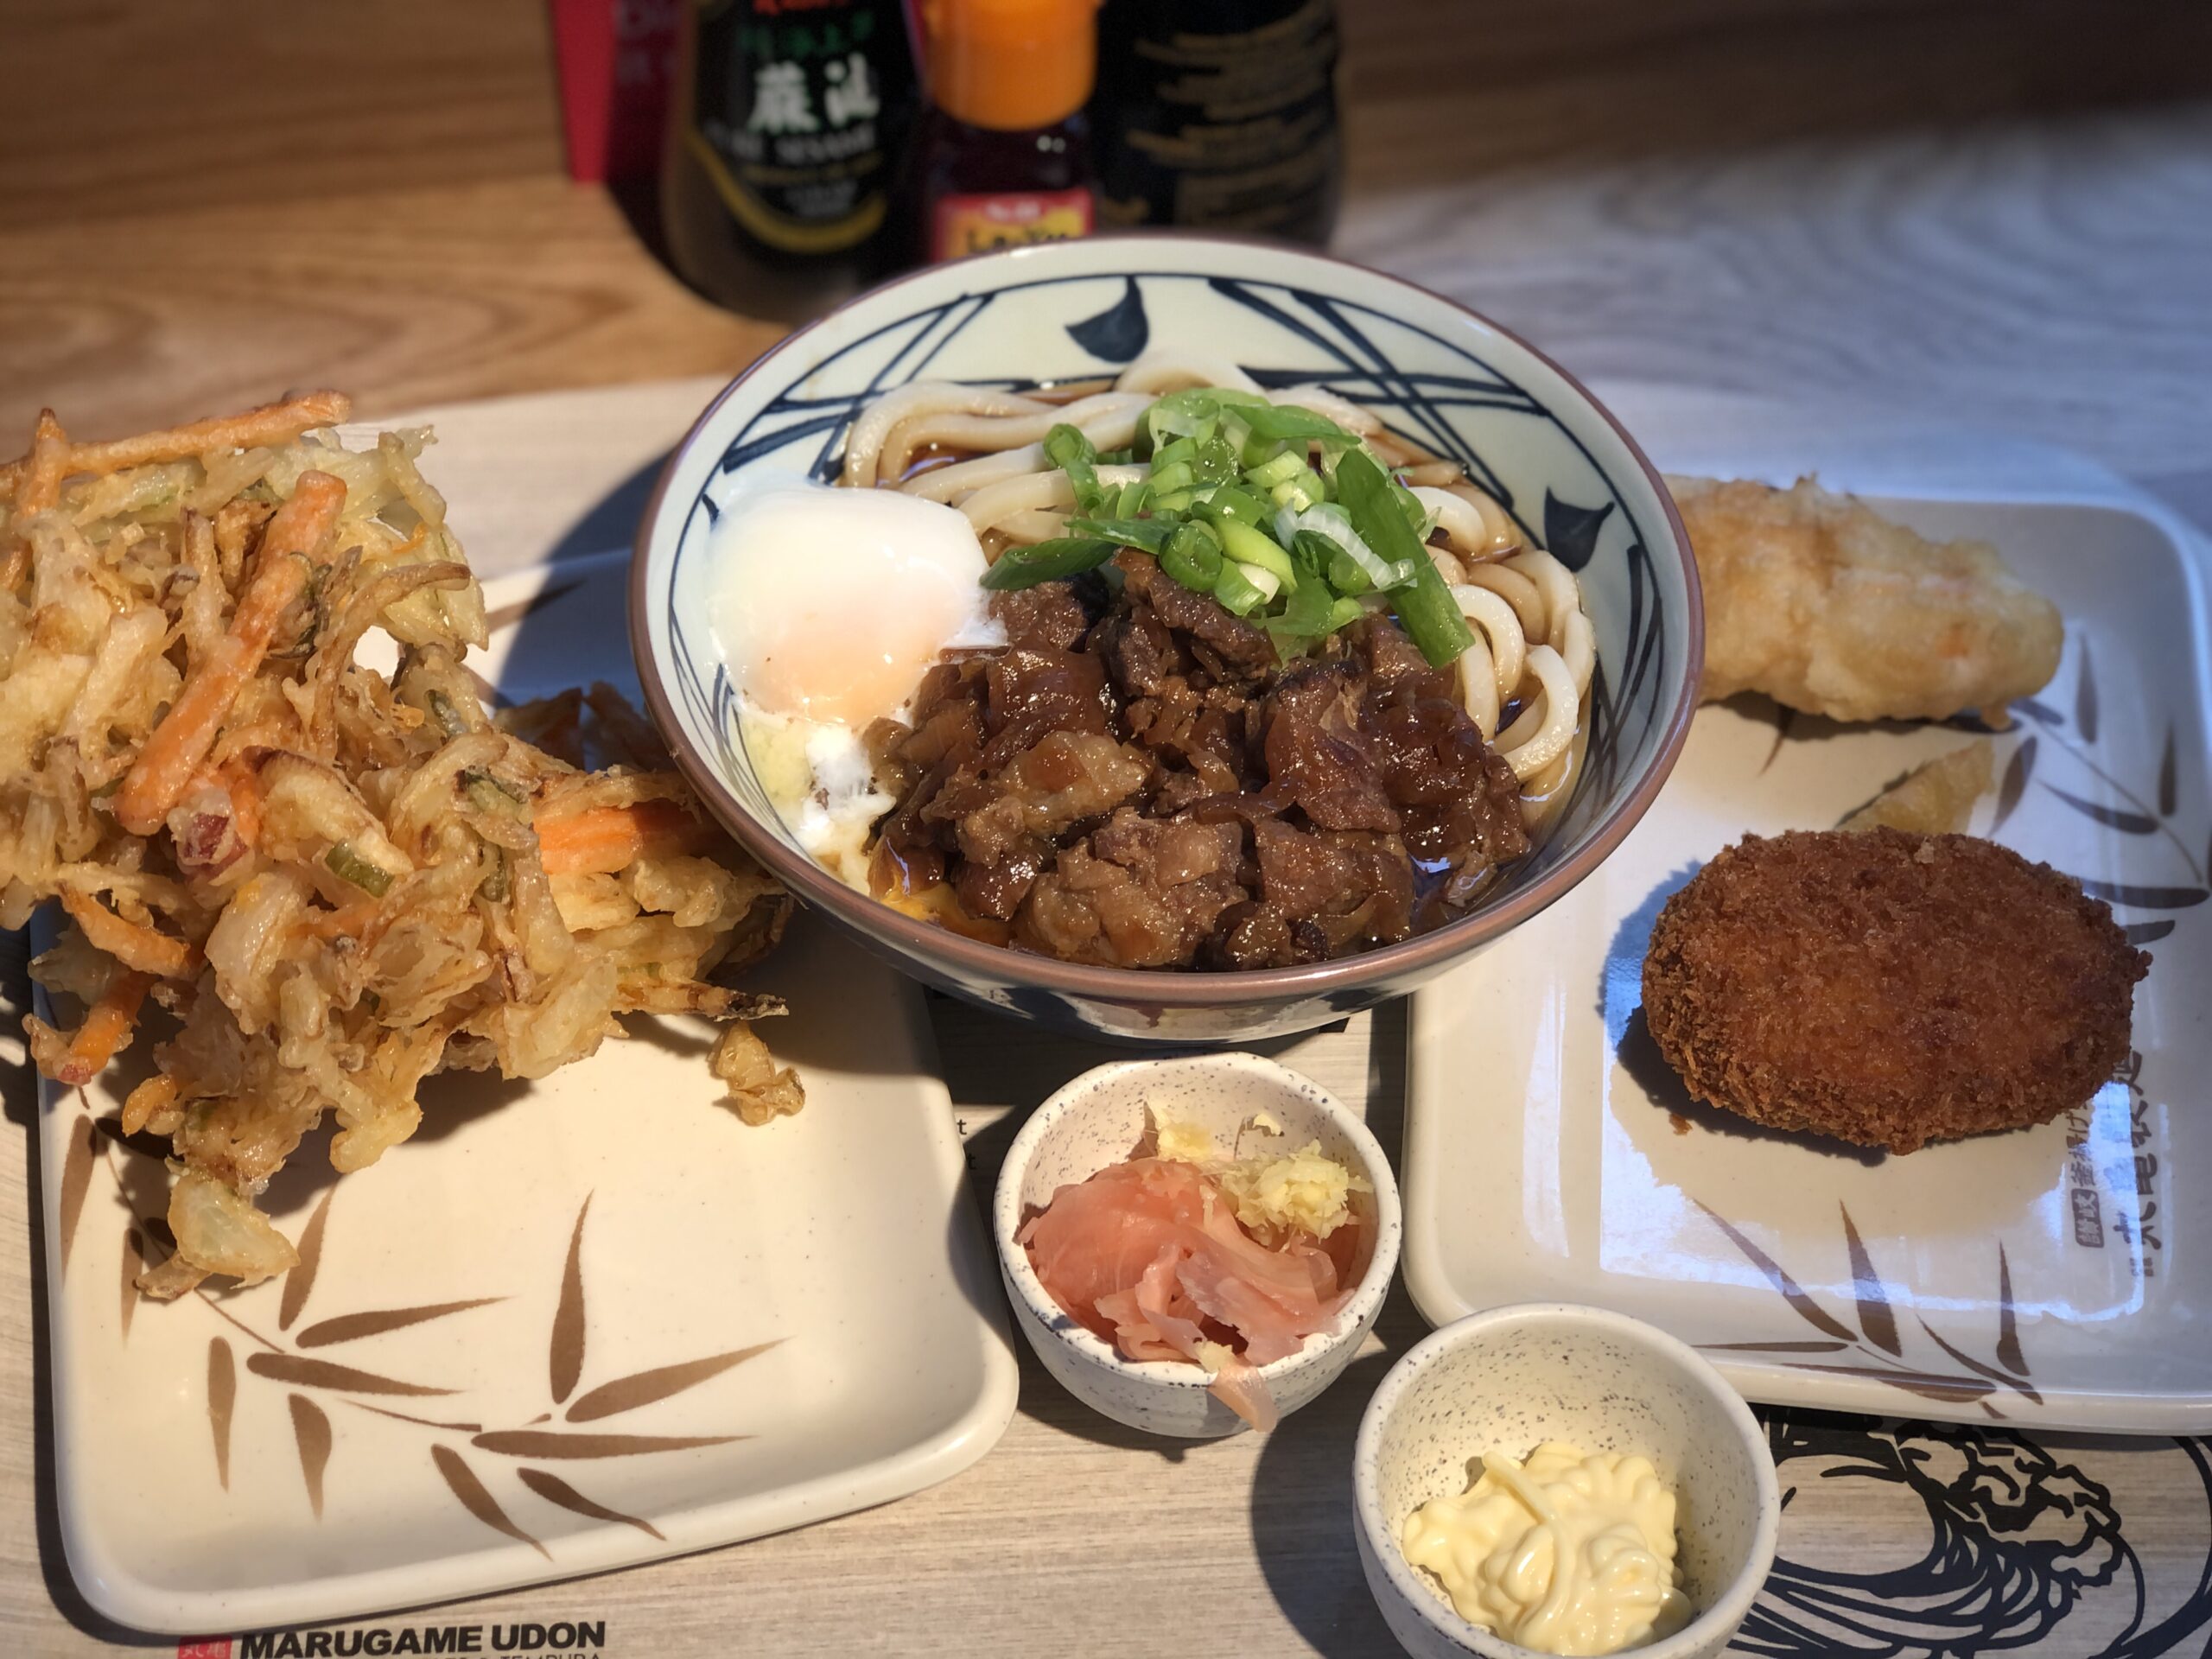 Marugame Udon meal